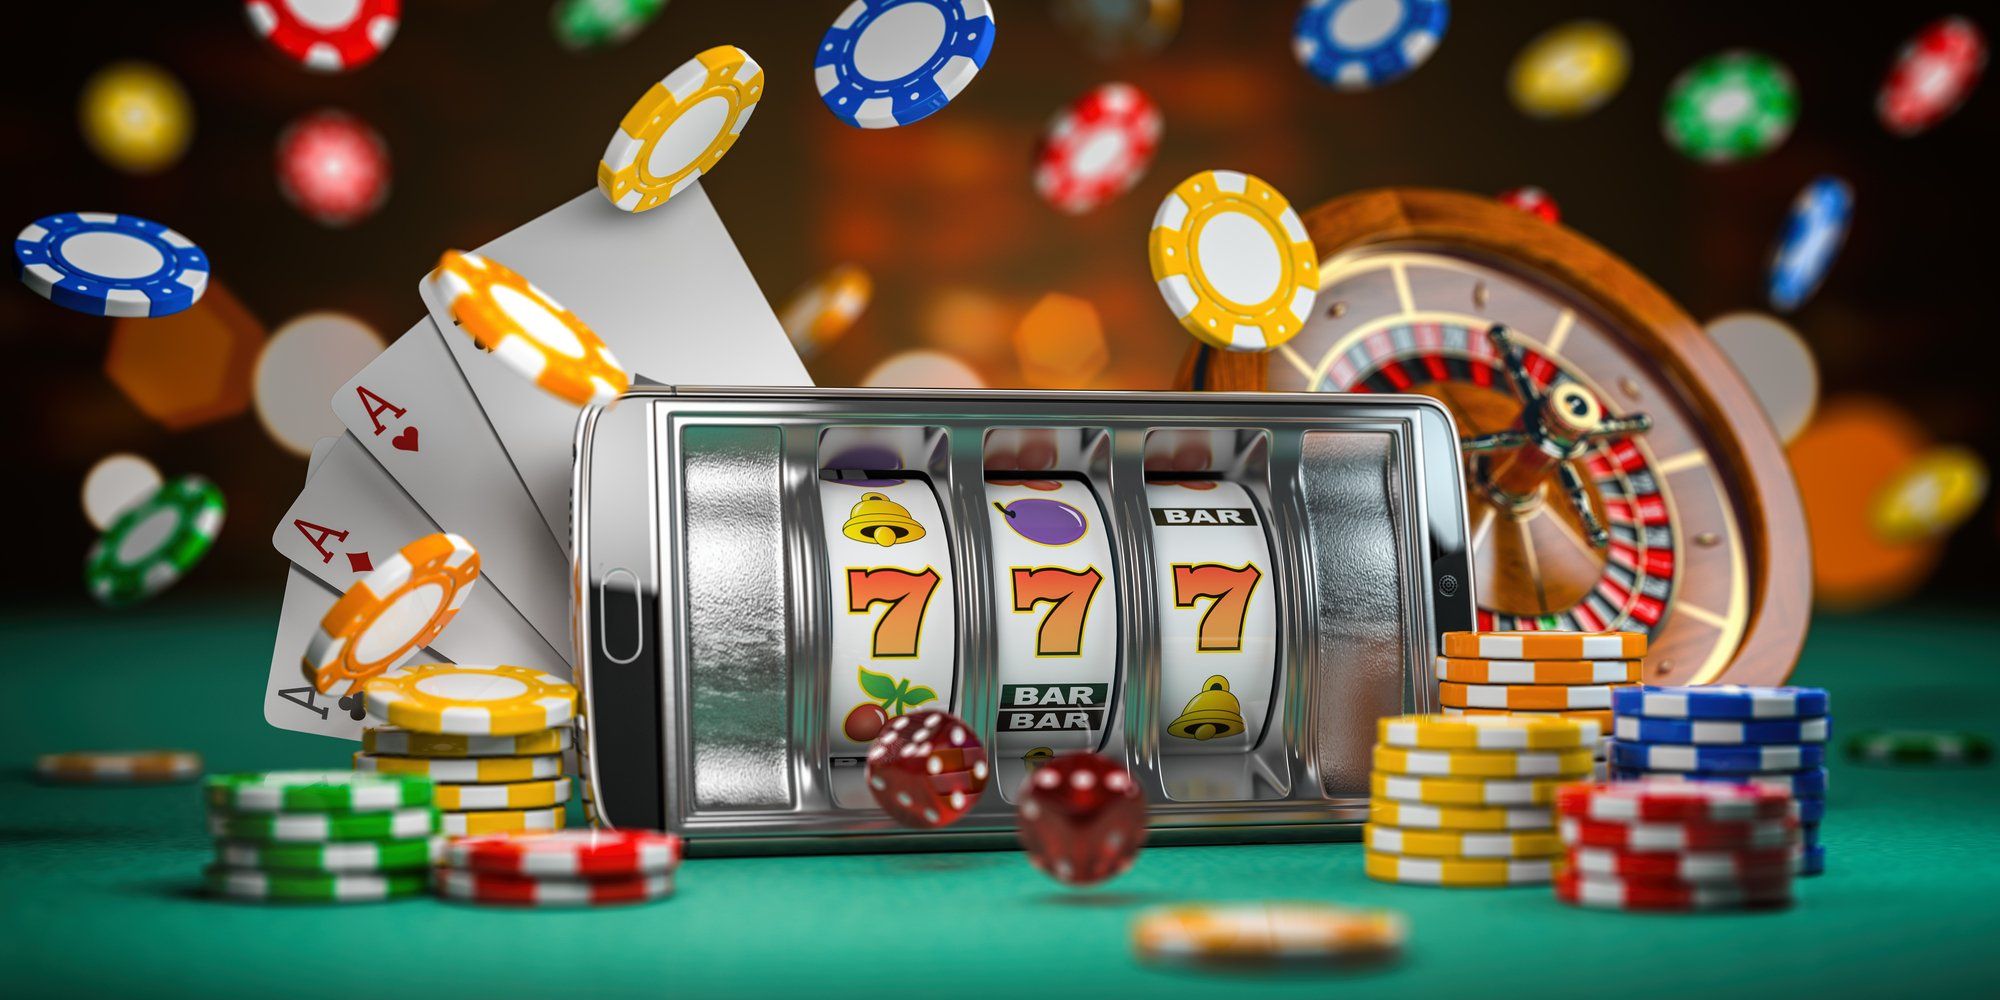 4 Mejores Juegos de Casino Online para principiantes - EL BOLETIN